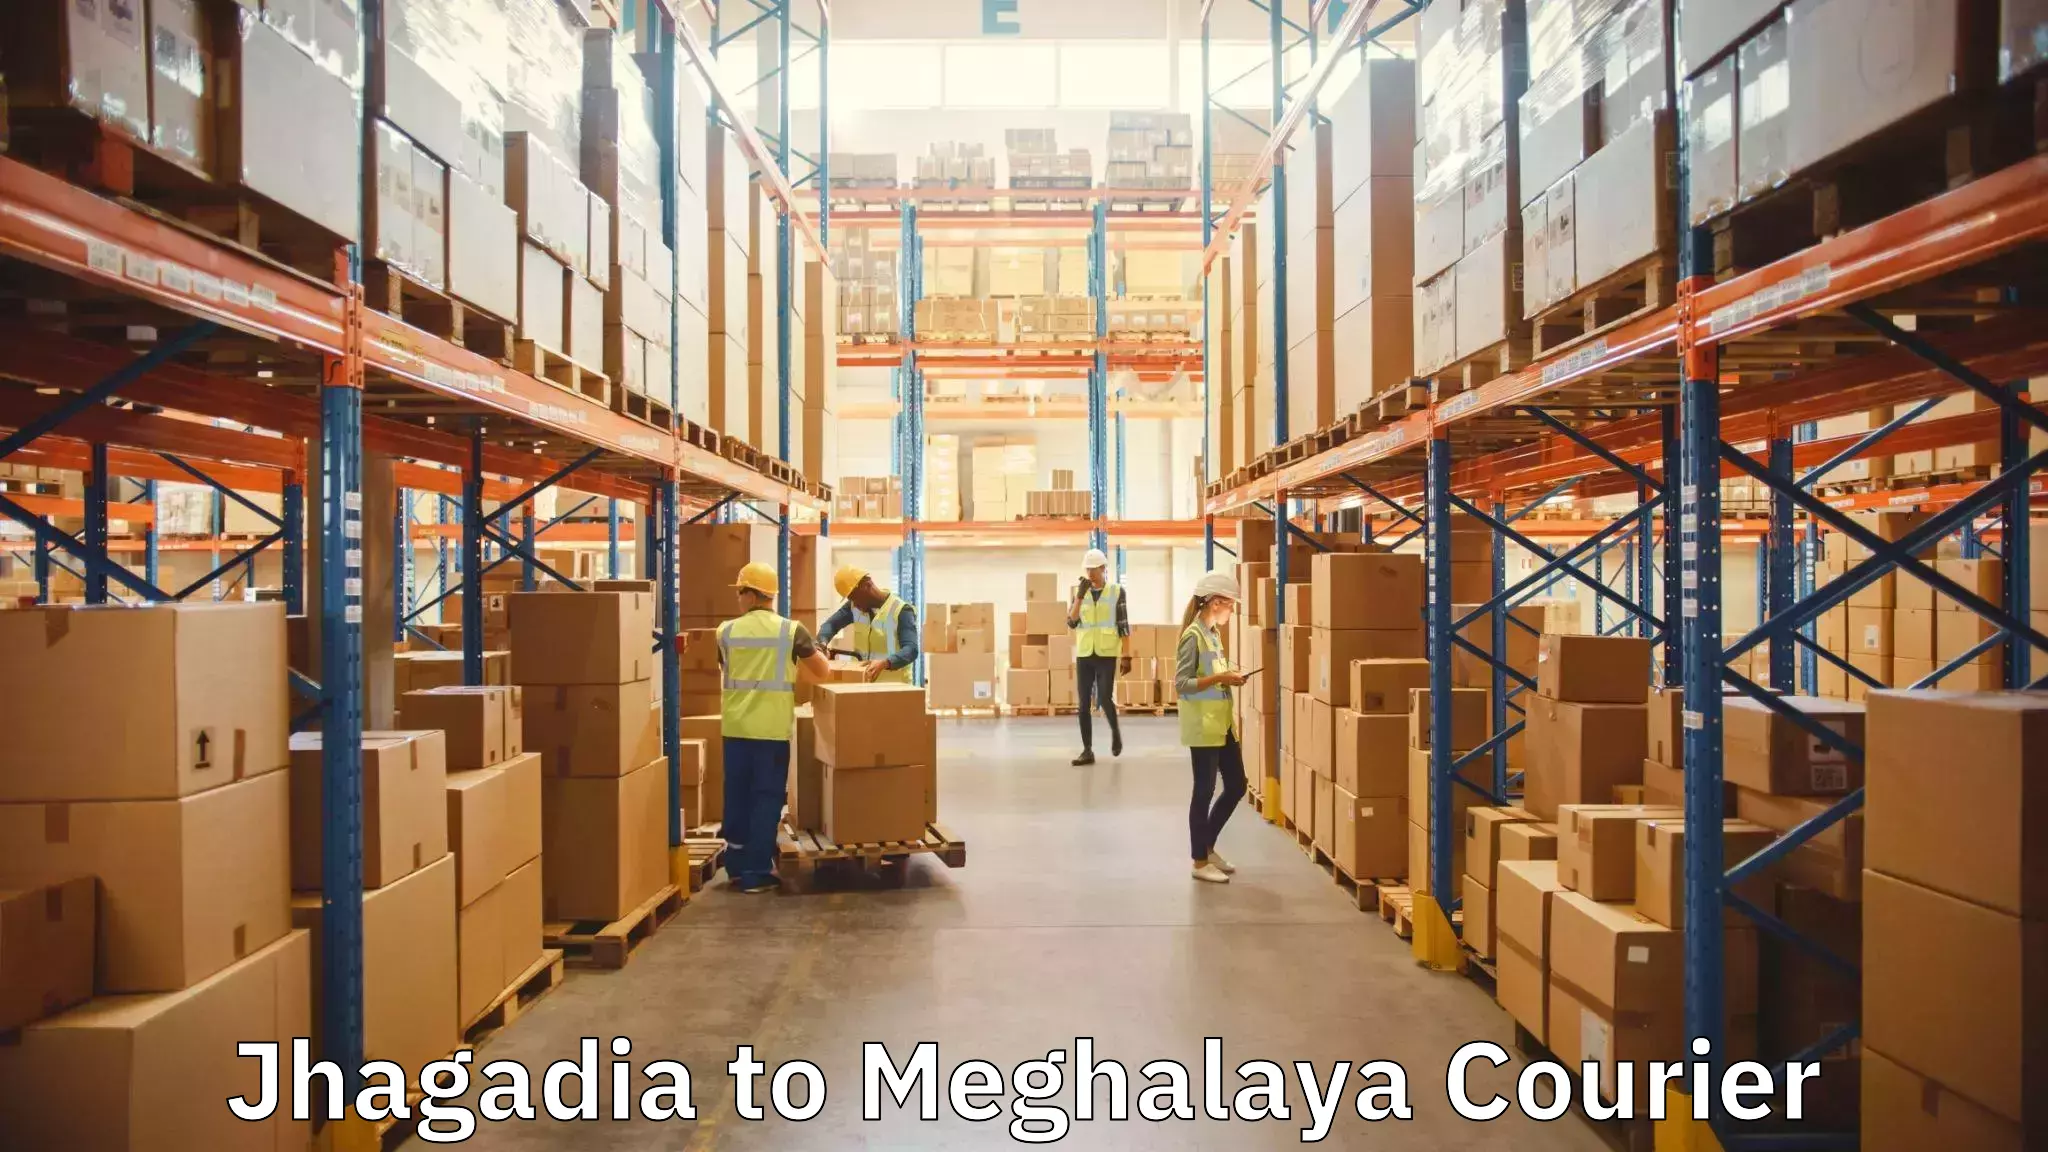 Moving and handling services Jhagadia to Garobadha